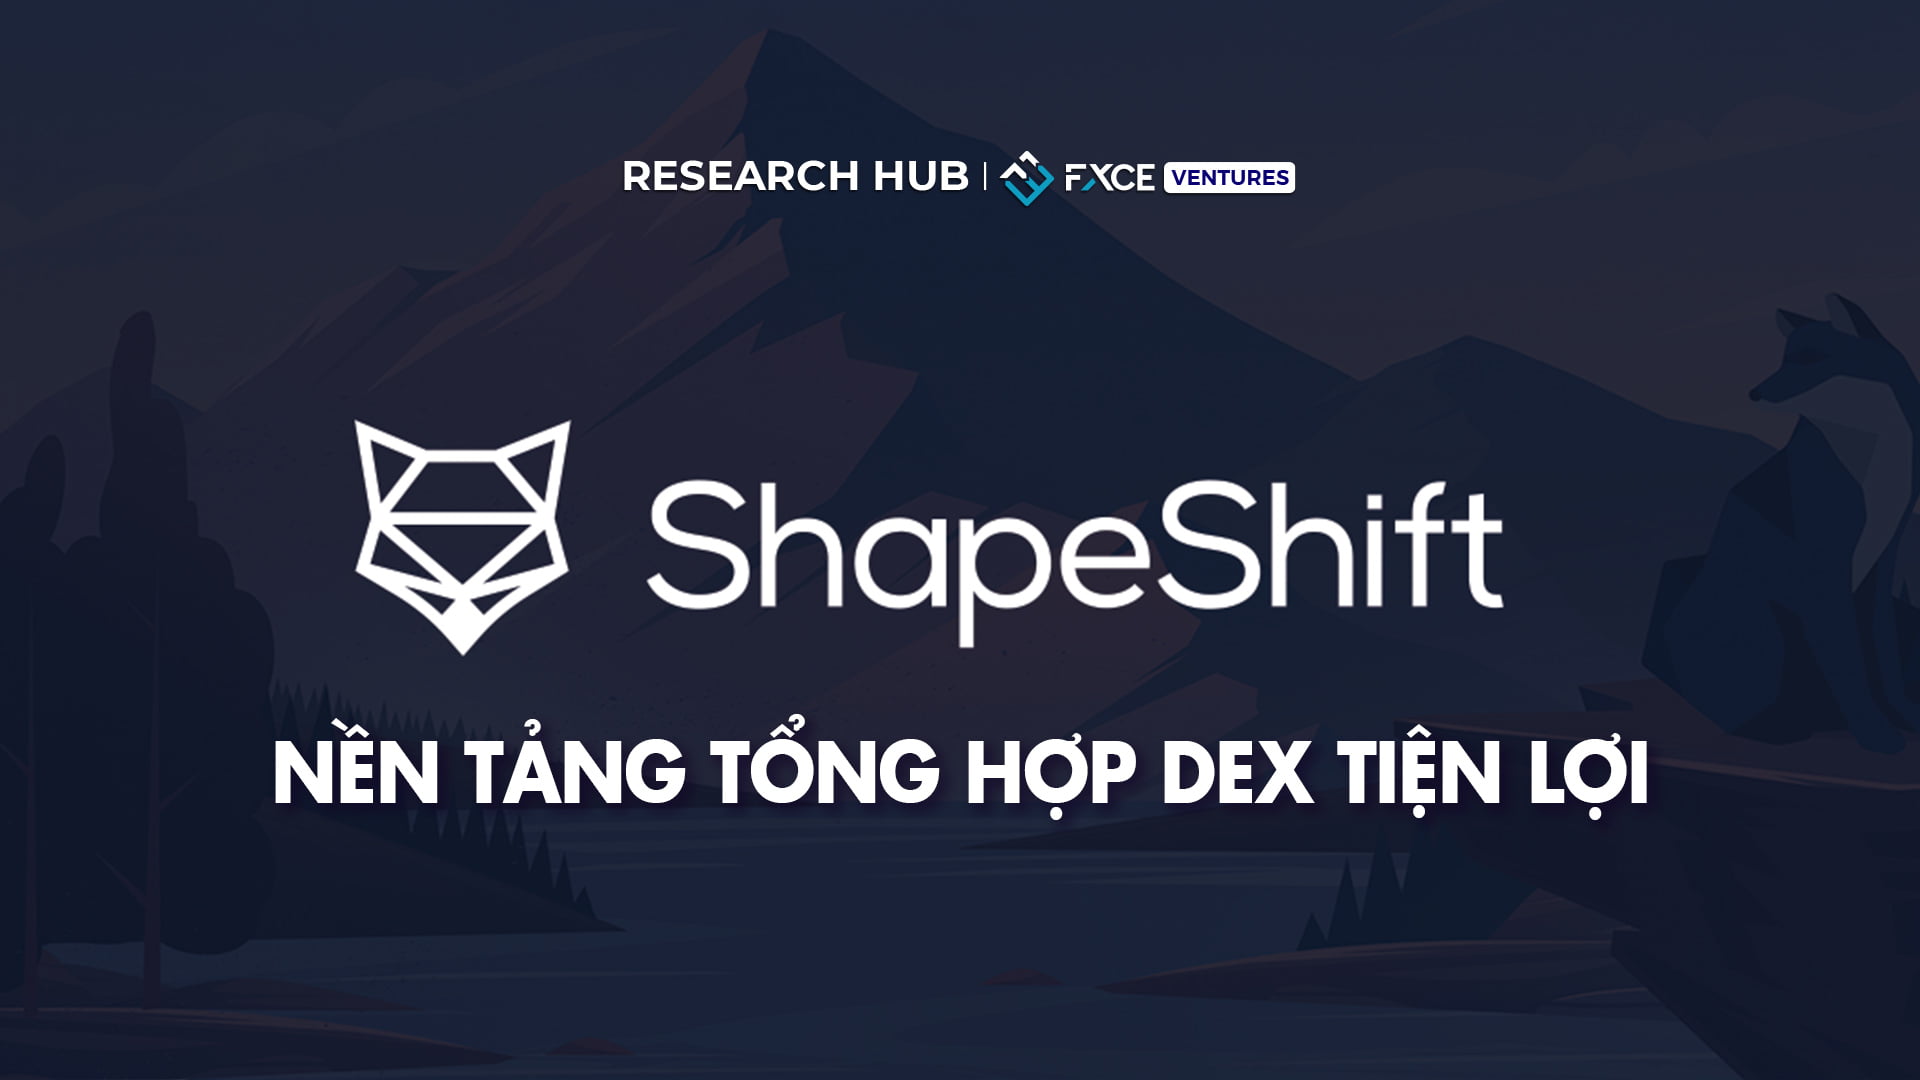 Đánh giá ShapeShift - Nền tảng tổng hợp DEX tiện lợi